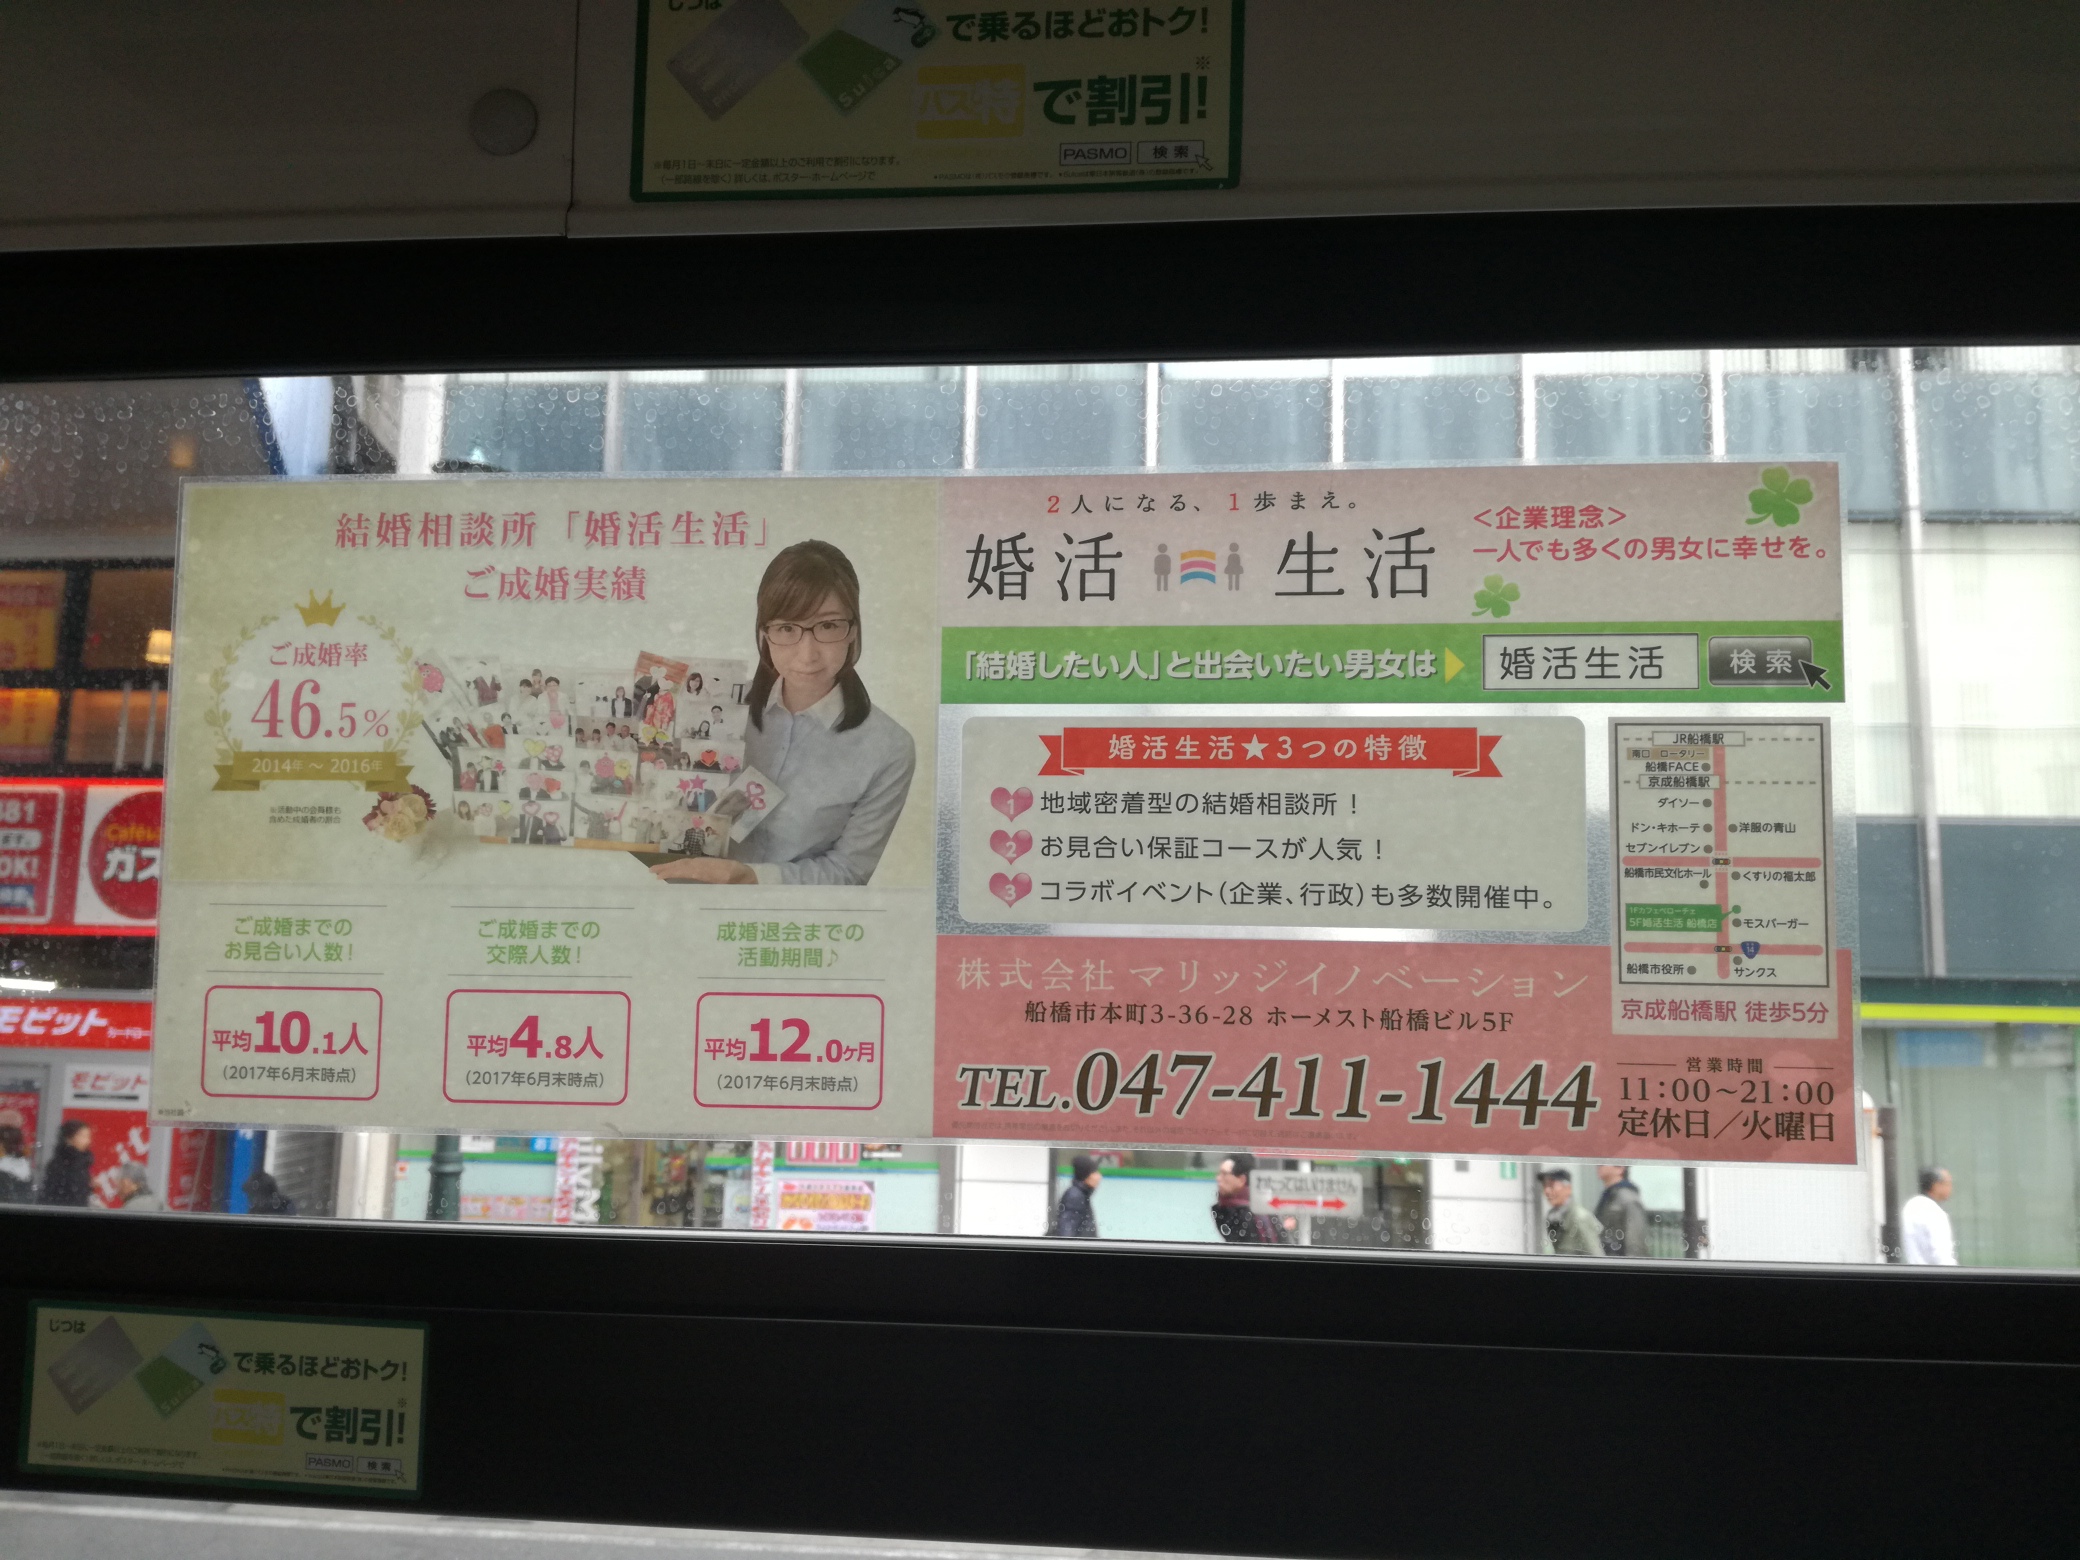 京成バスシステム窓広告アップ